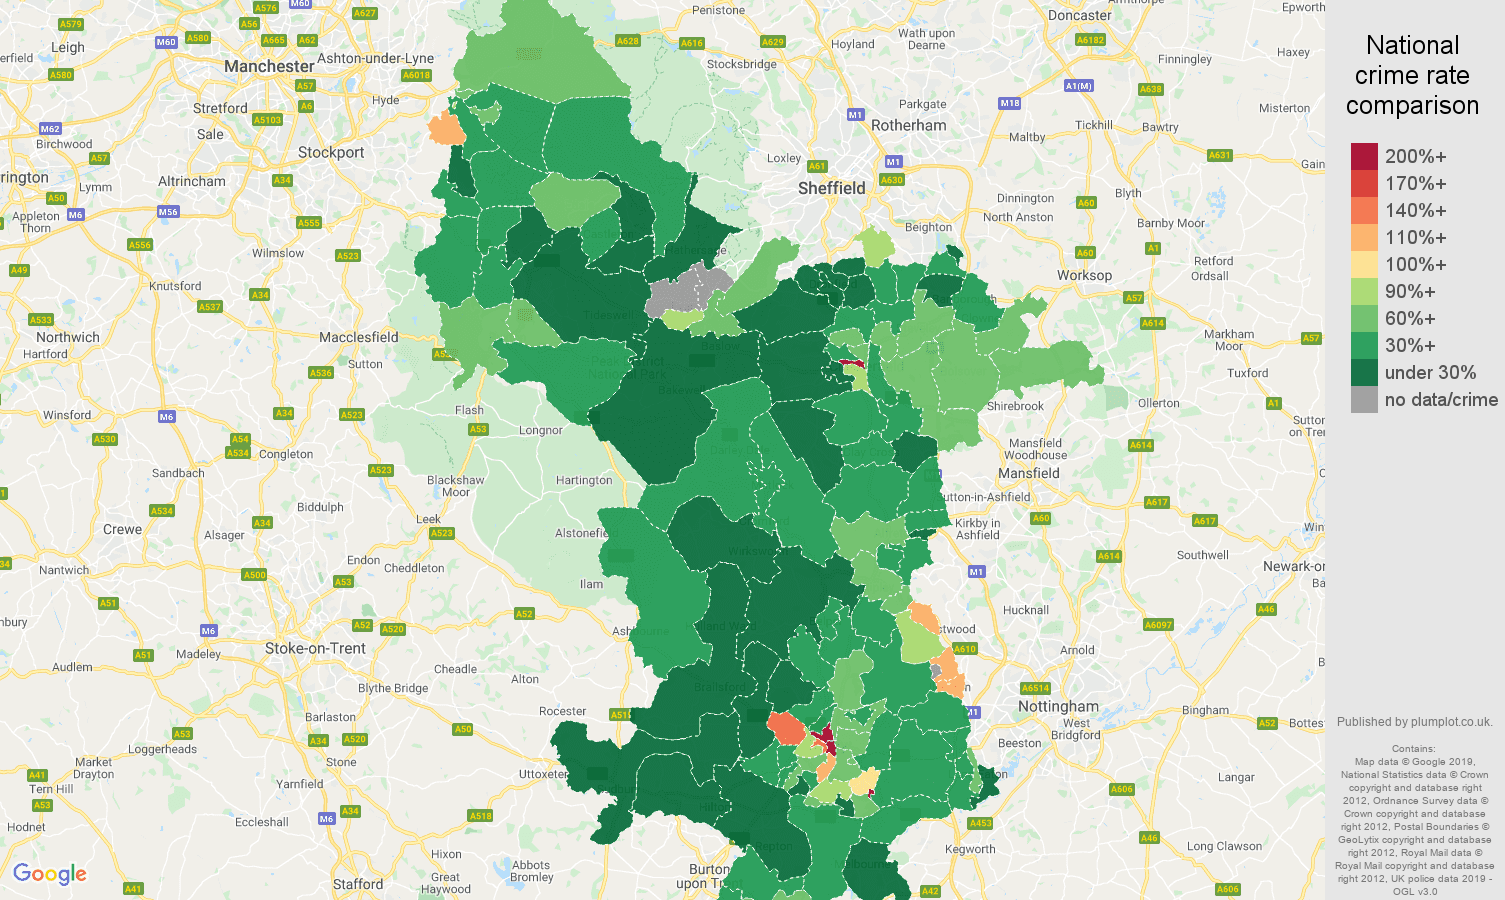 Derbyshire public order crime rate comparison map